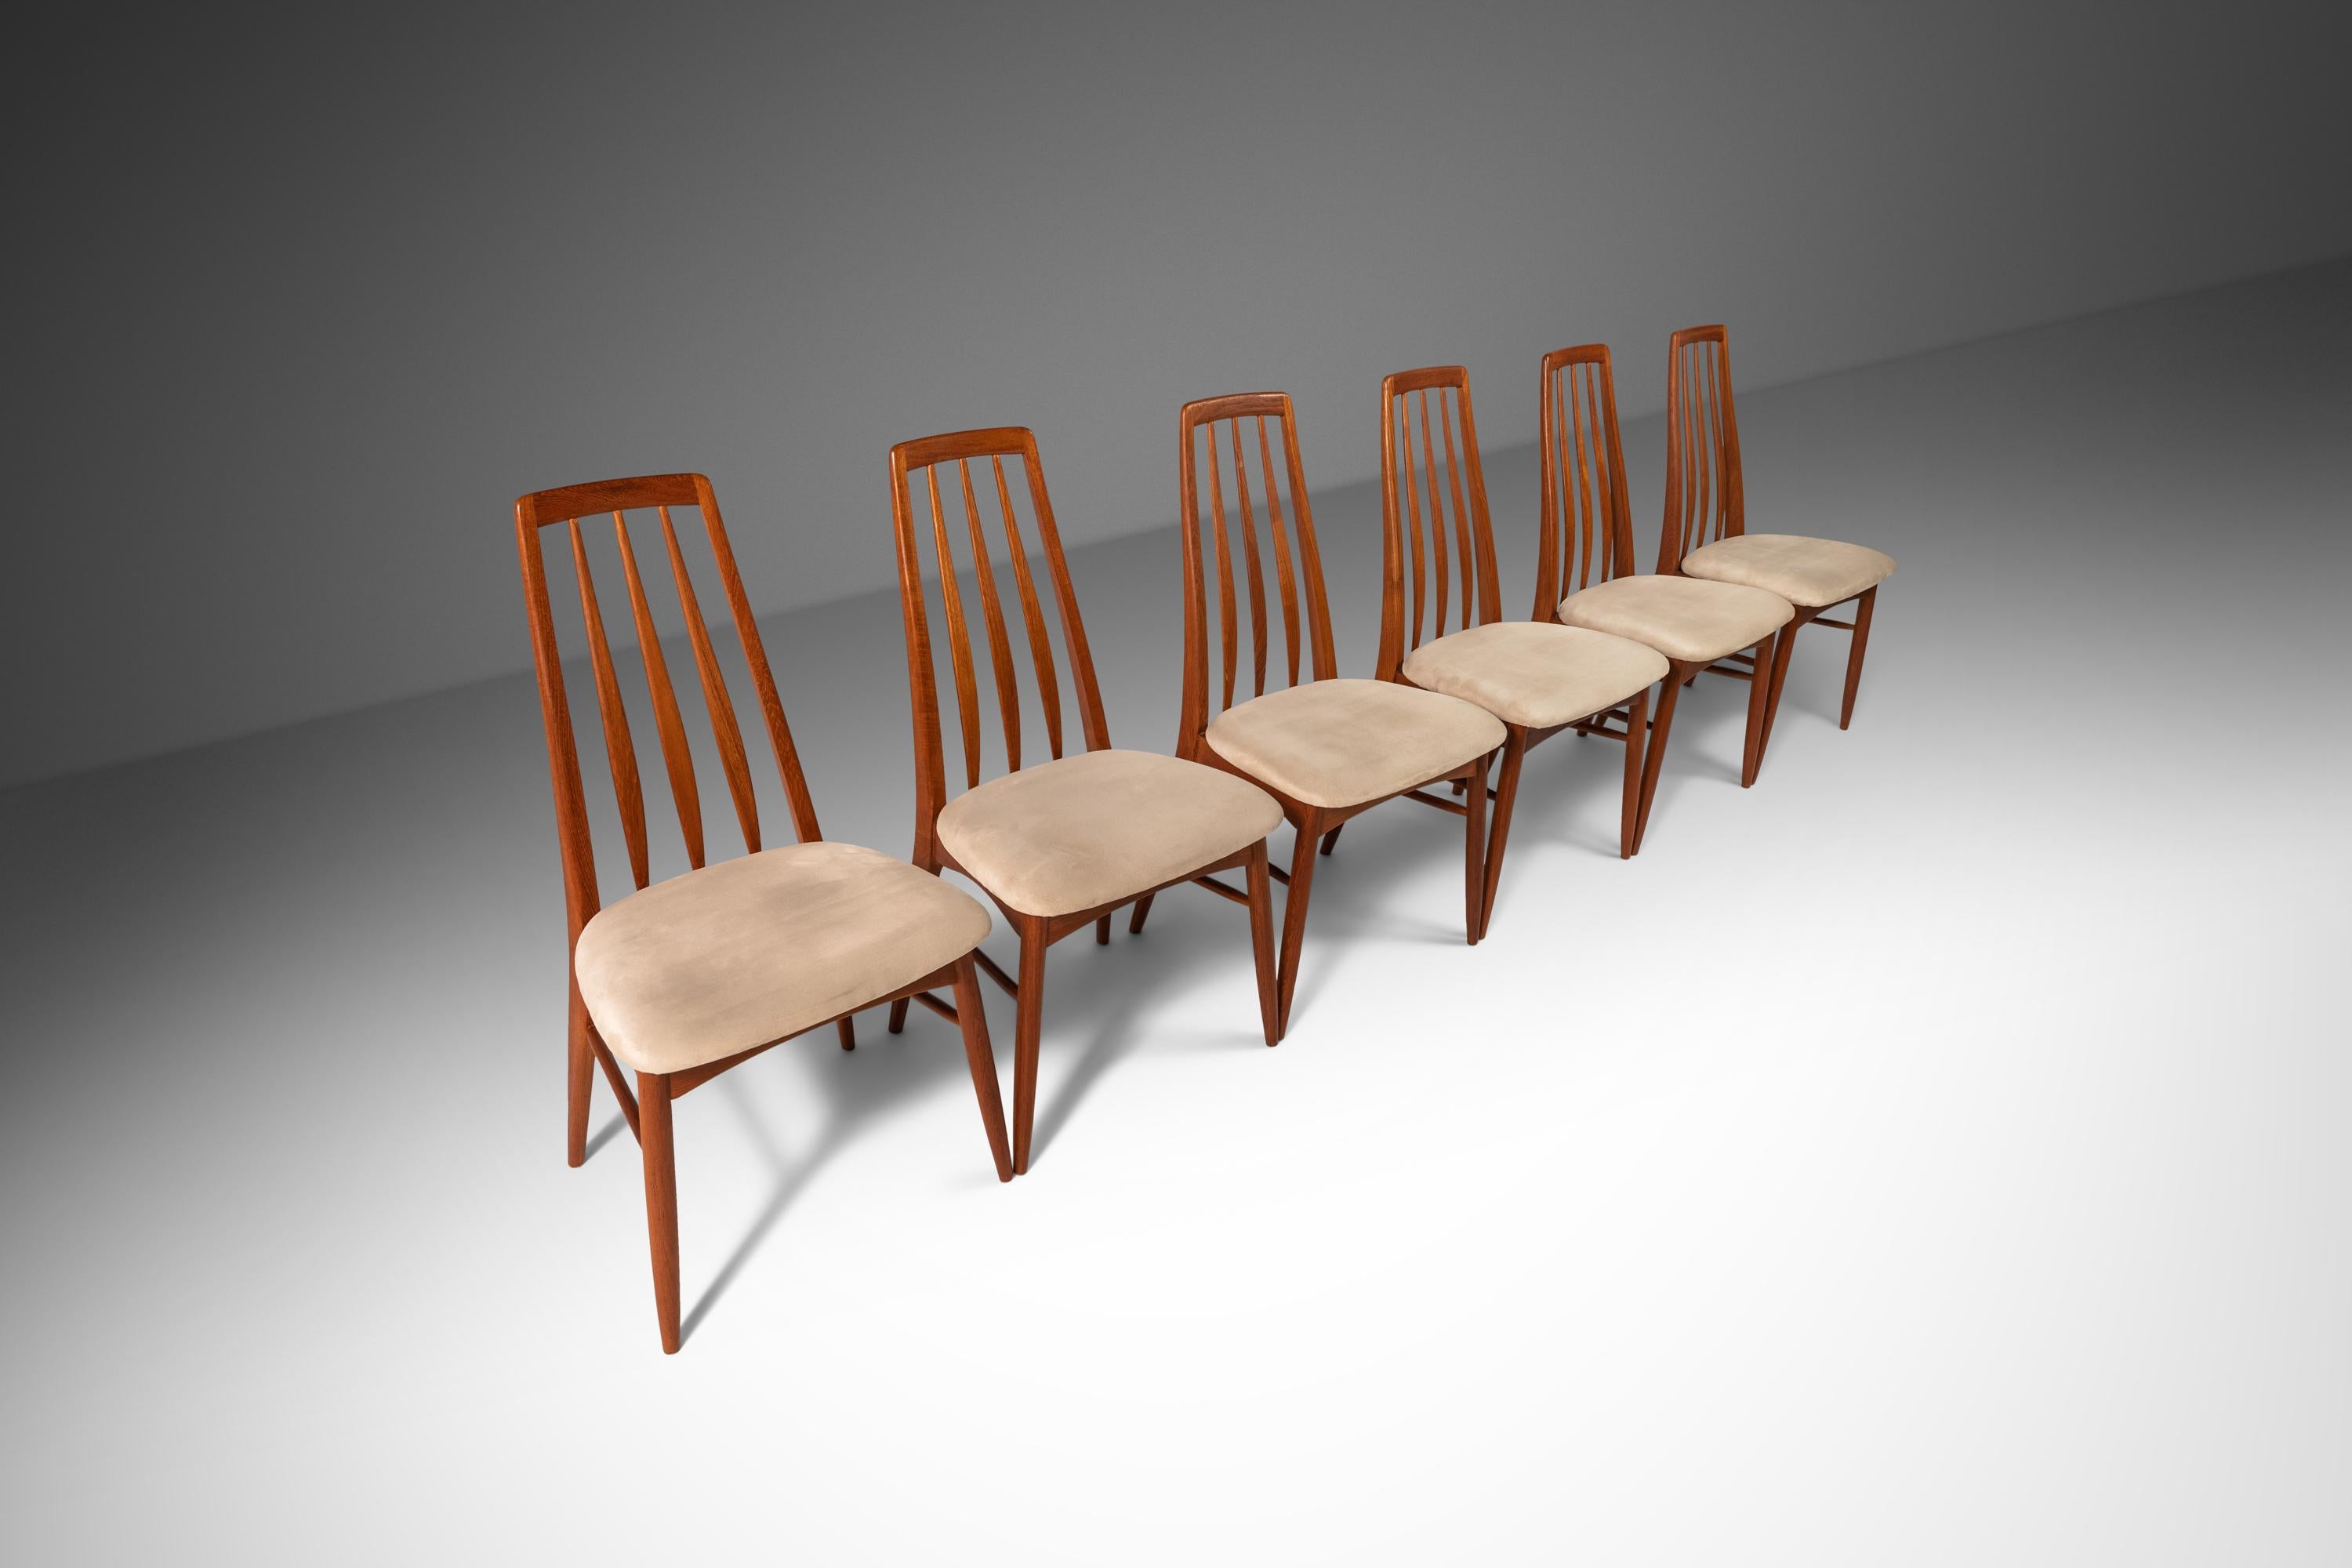 Aussi emblématique qu'esthétiquement séduisante, cette série de chaises 